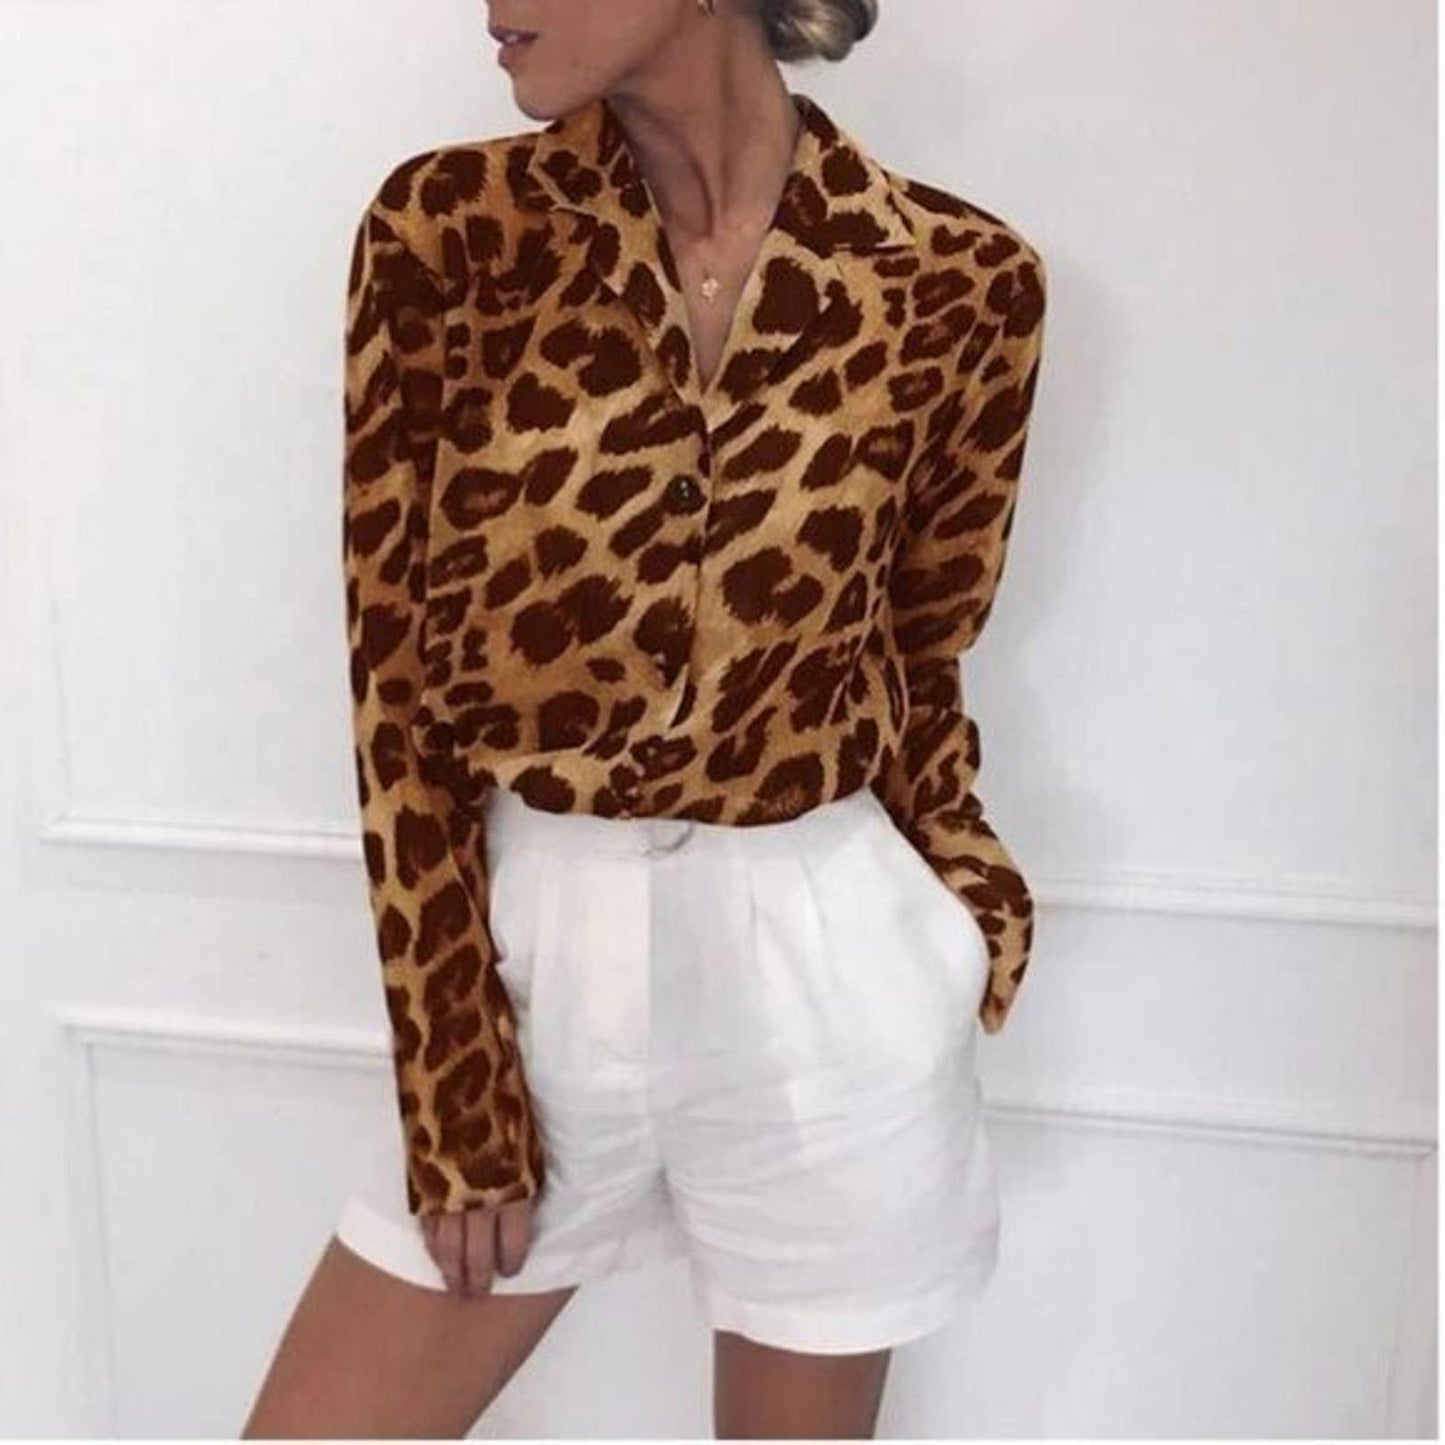 Cheetah Print Blouse sz M button down career blouse NWT